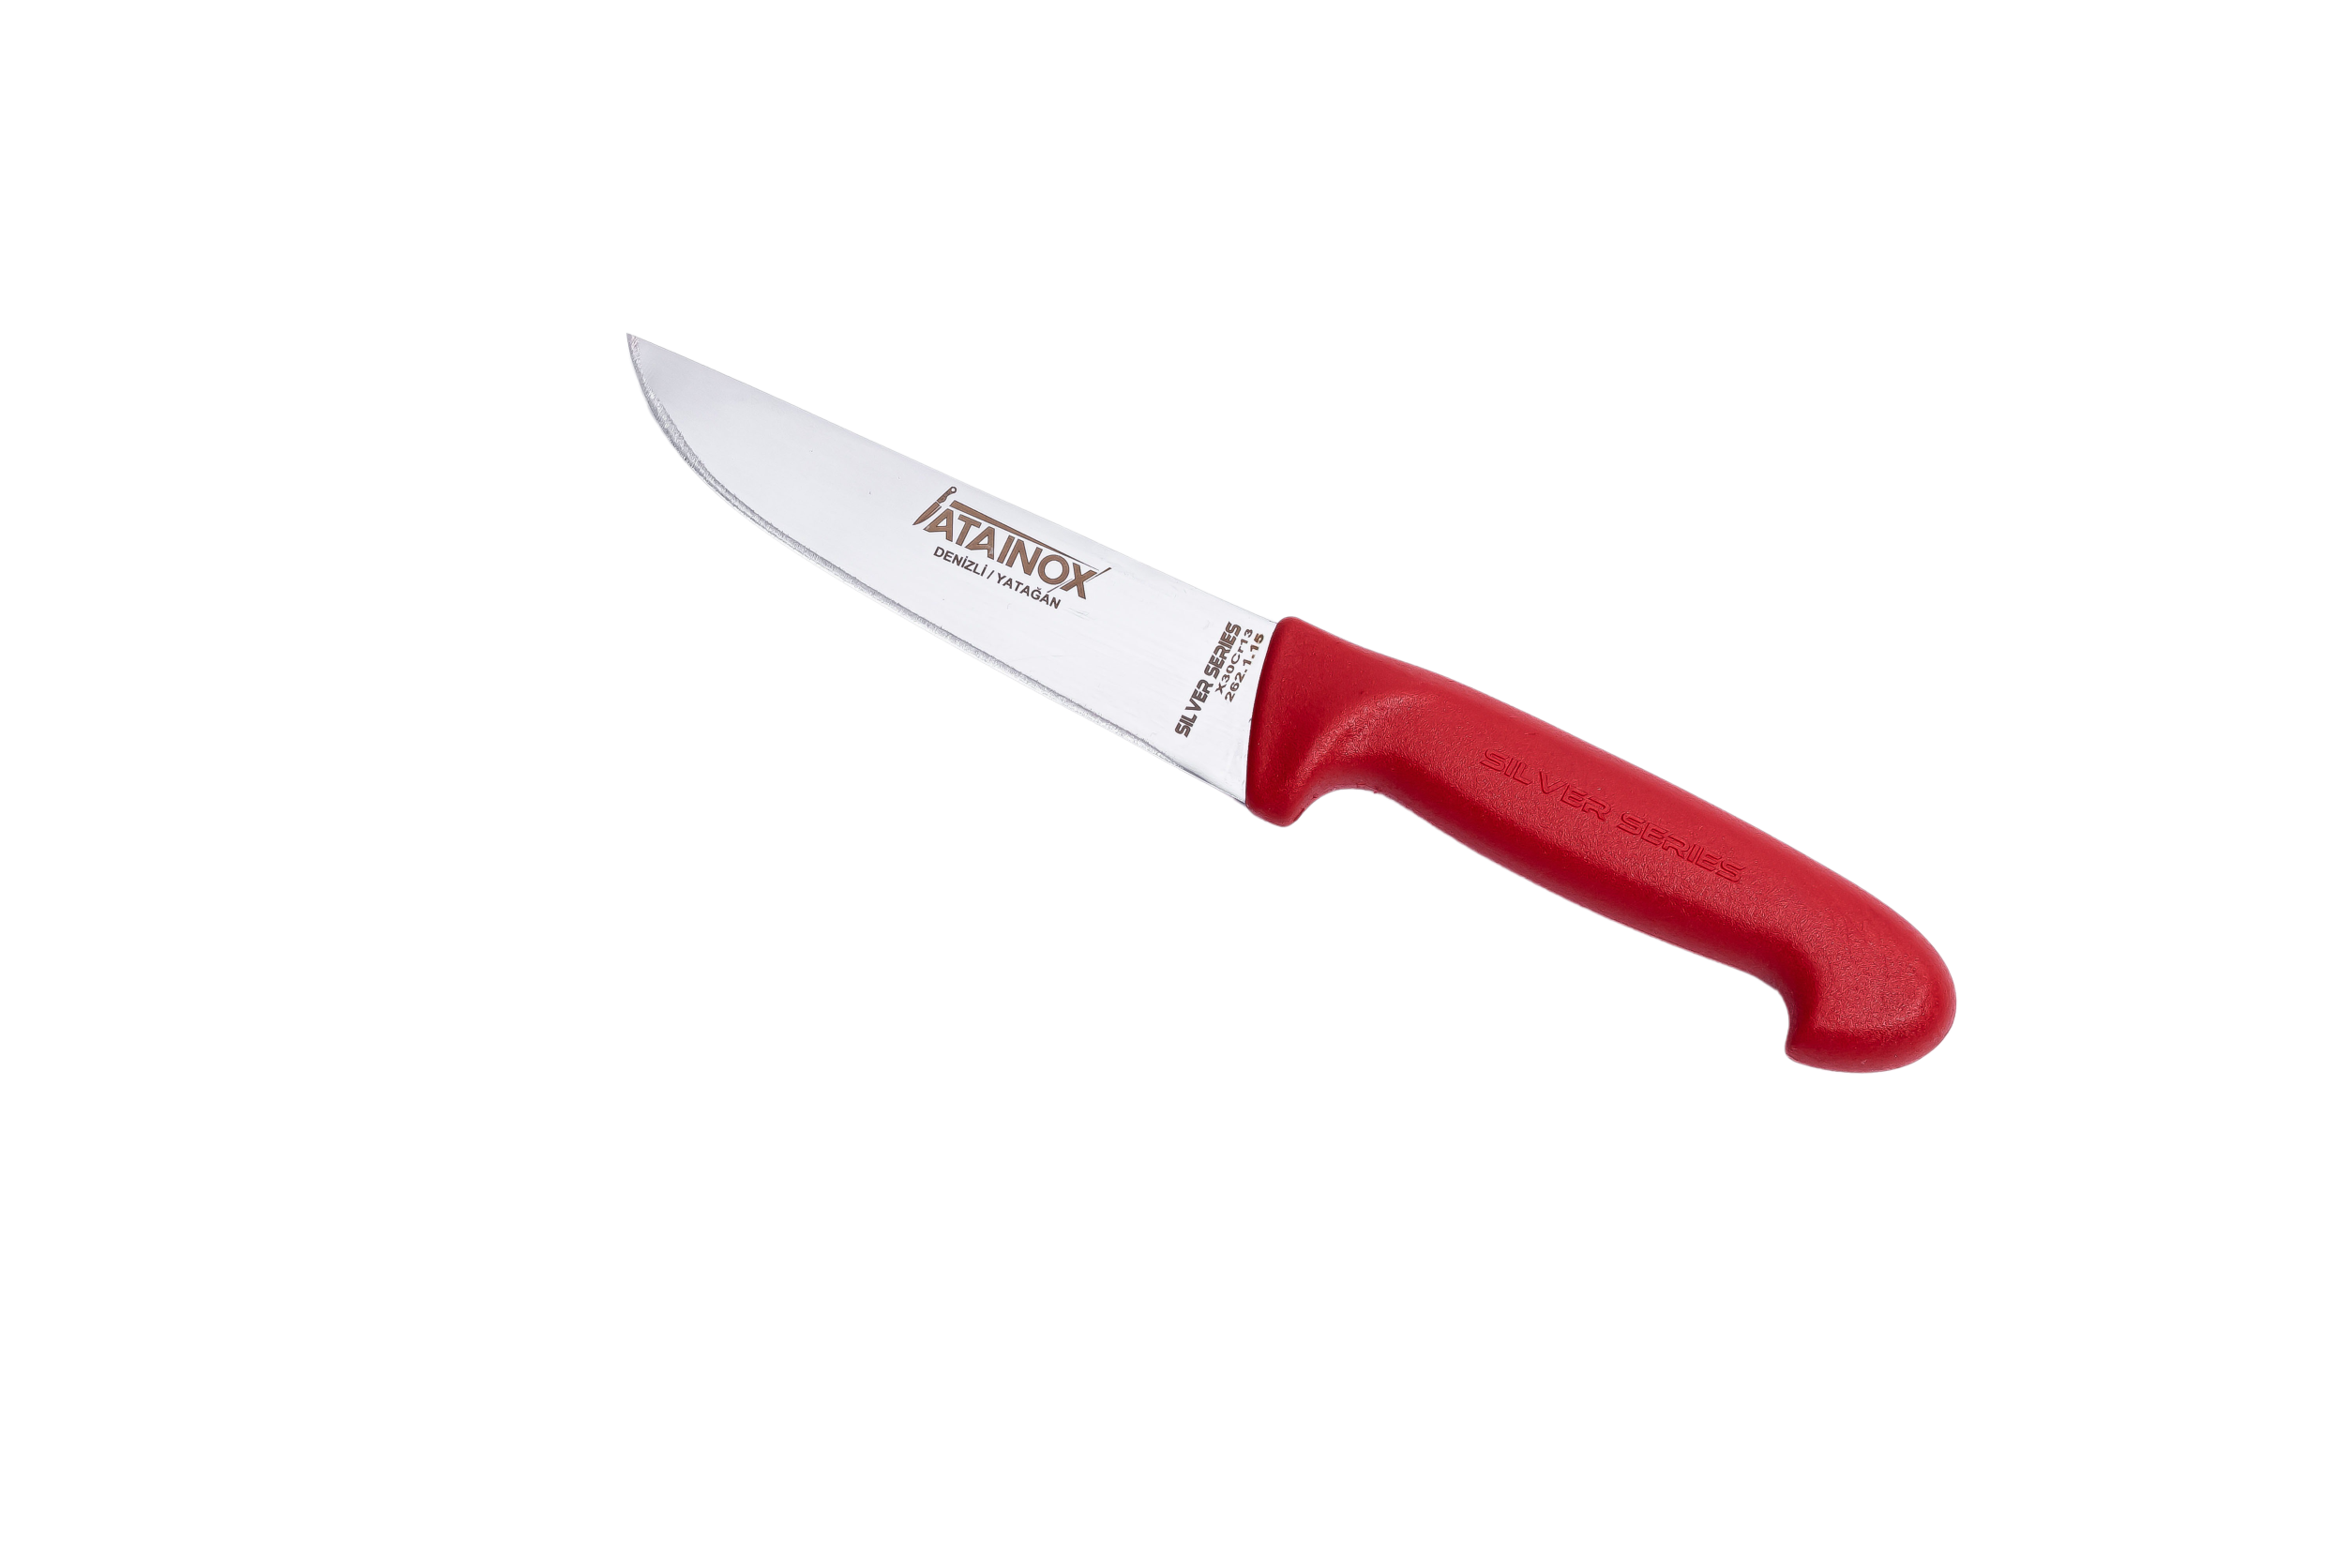 Atasan Atainox Serisi Kasap Bıçağı No 1